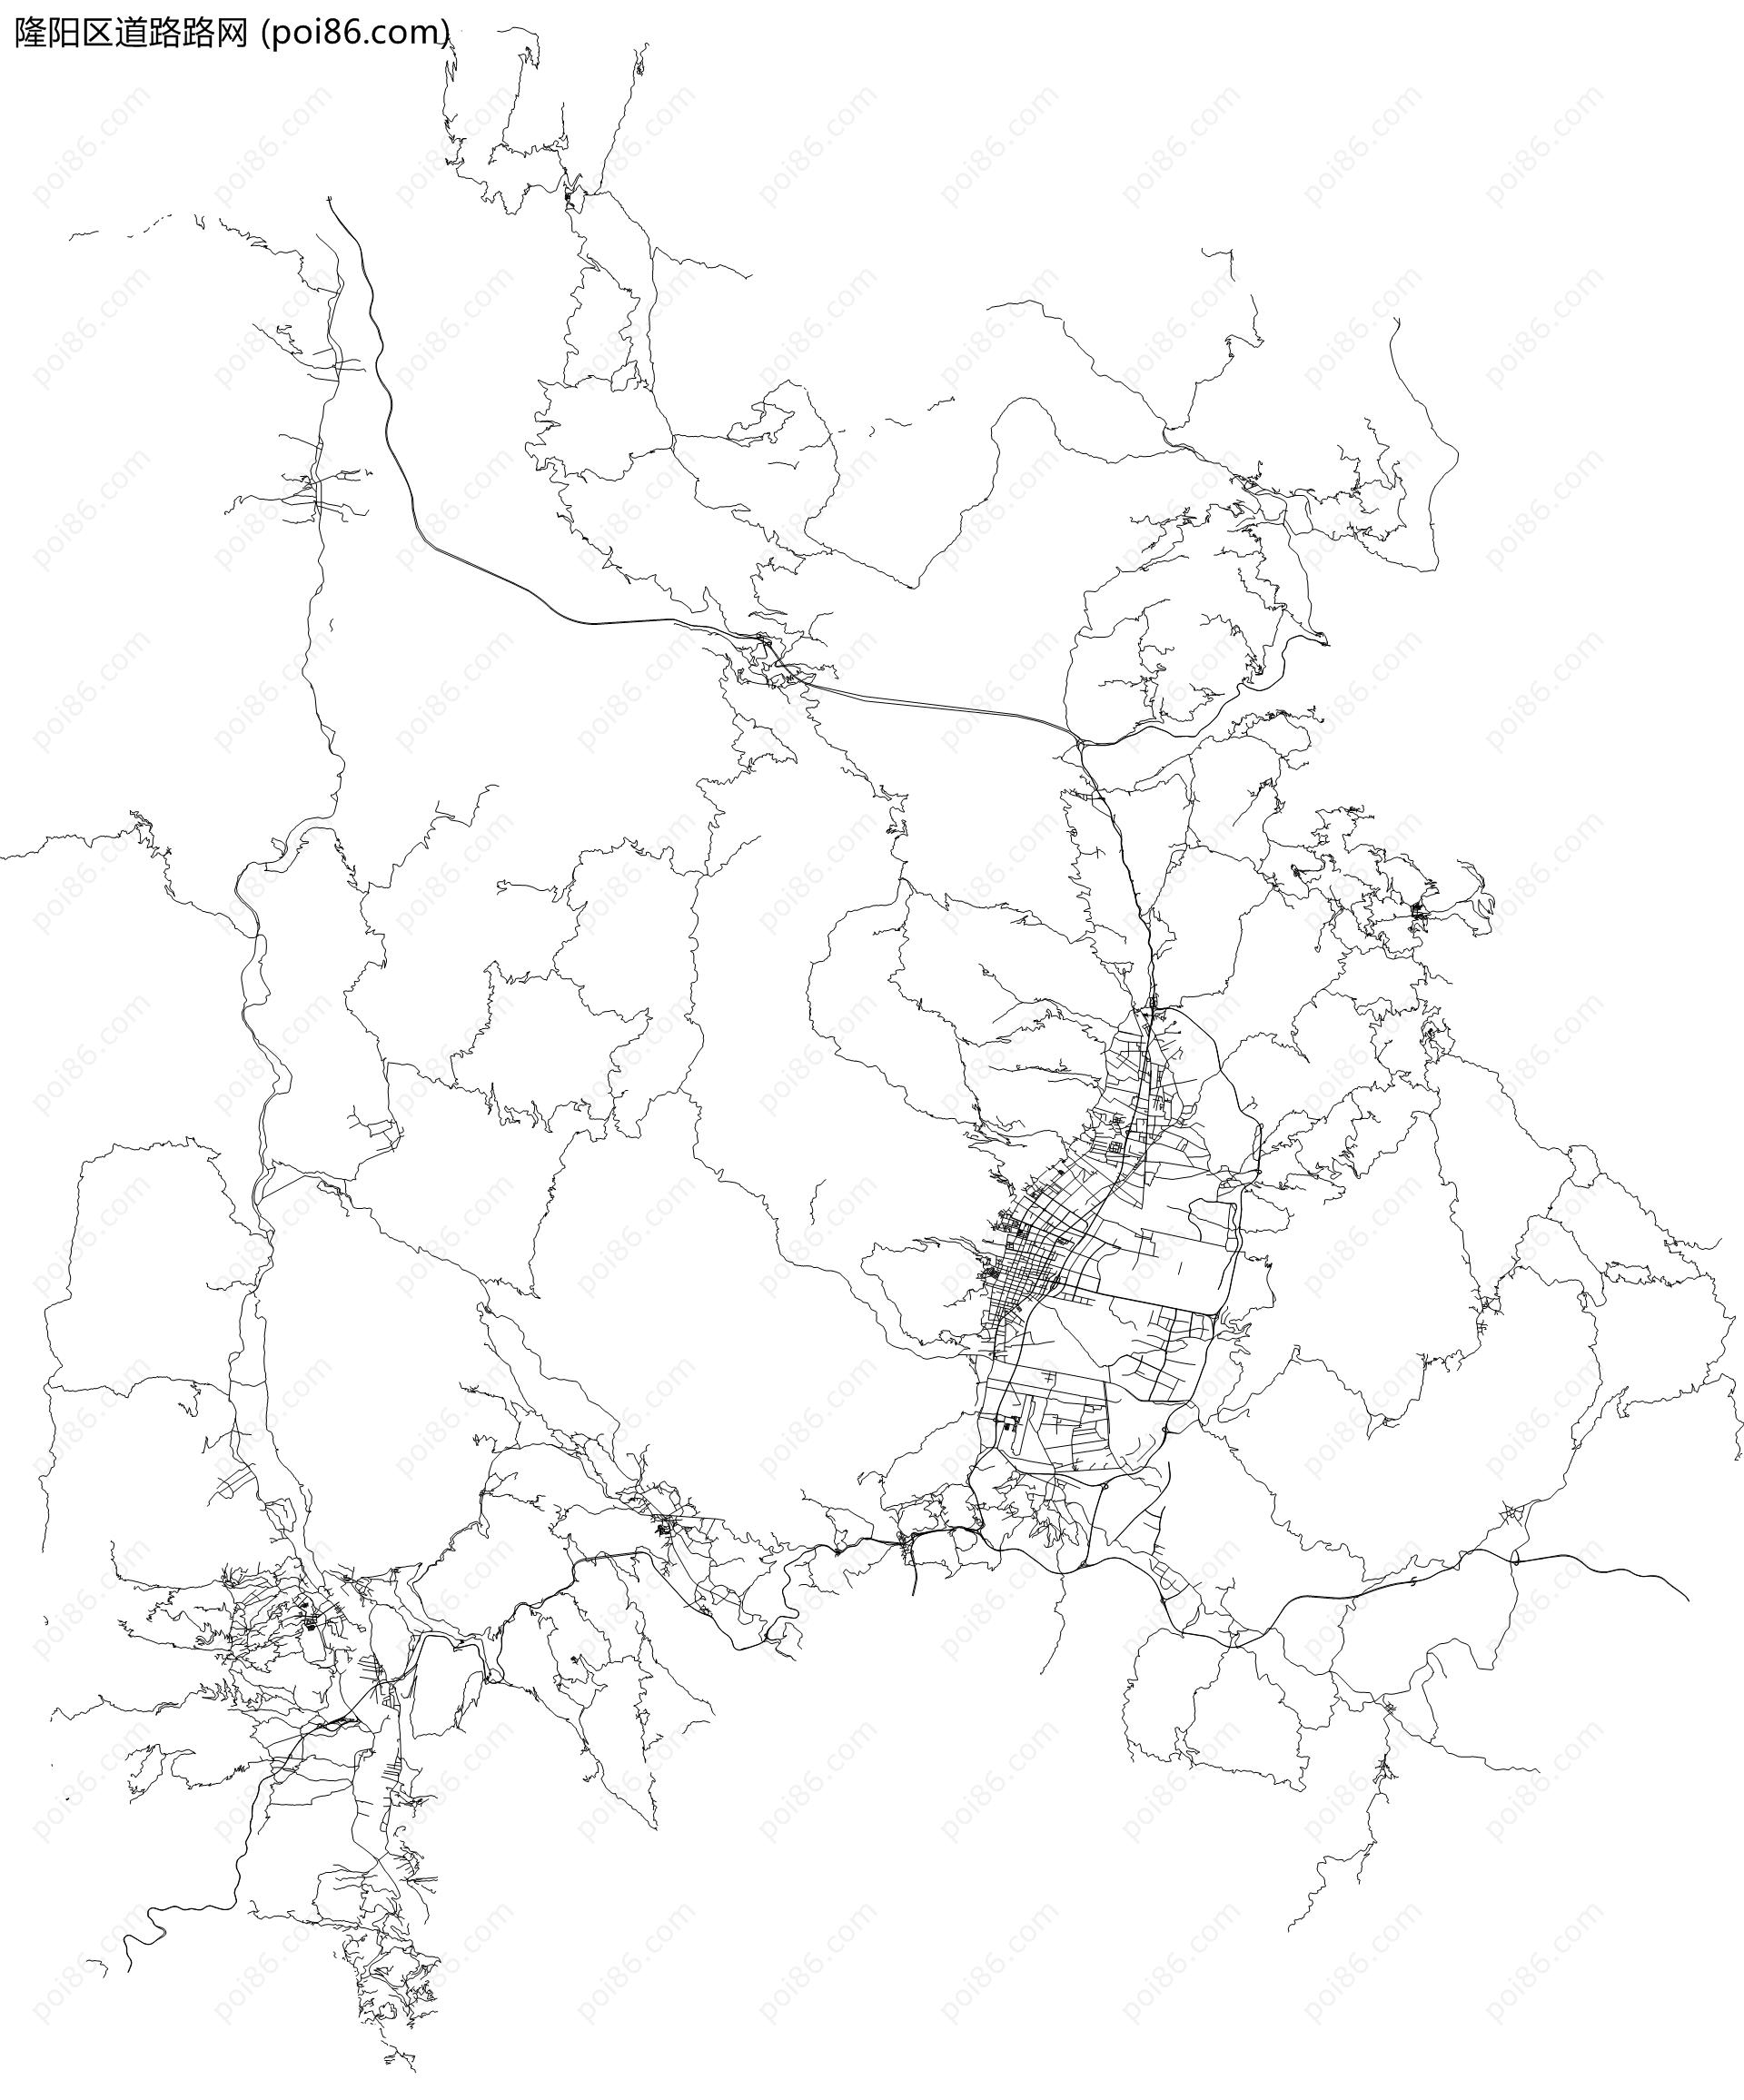 隆阳区道路路网地图